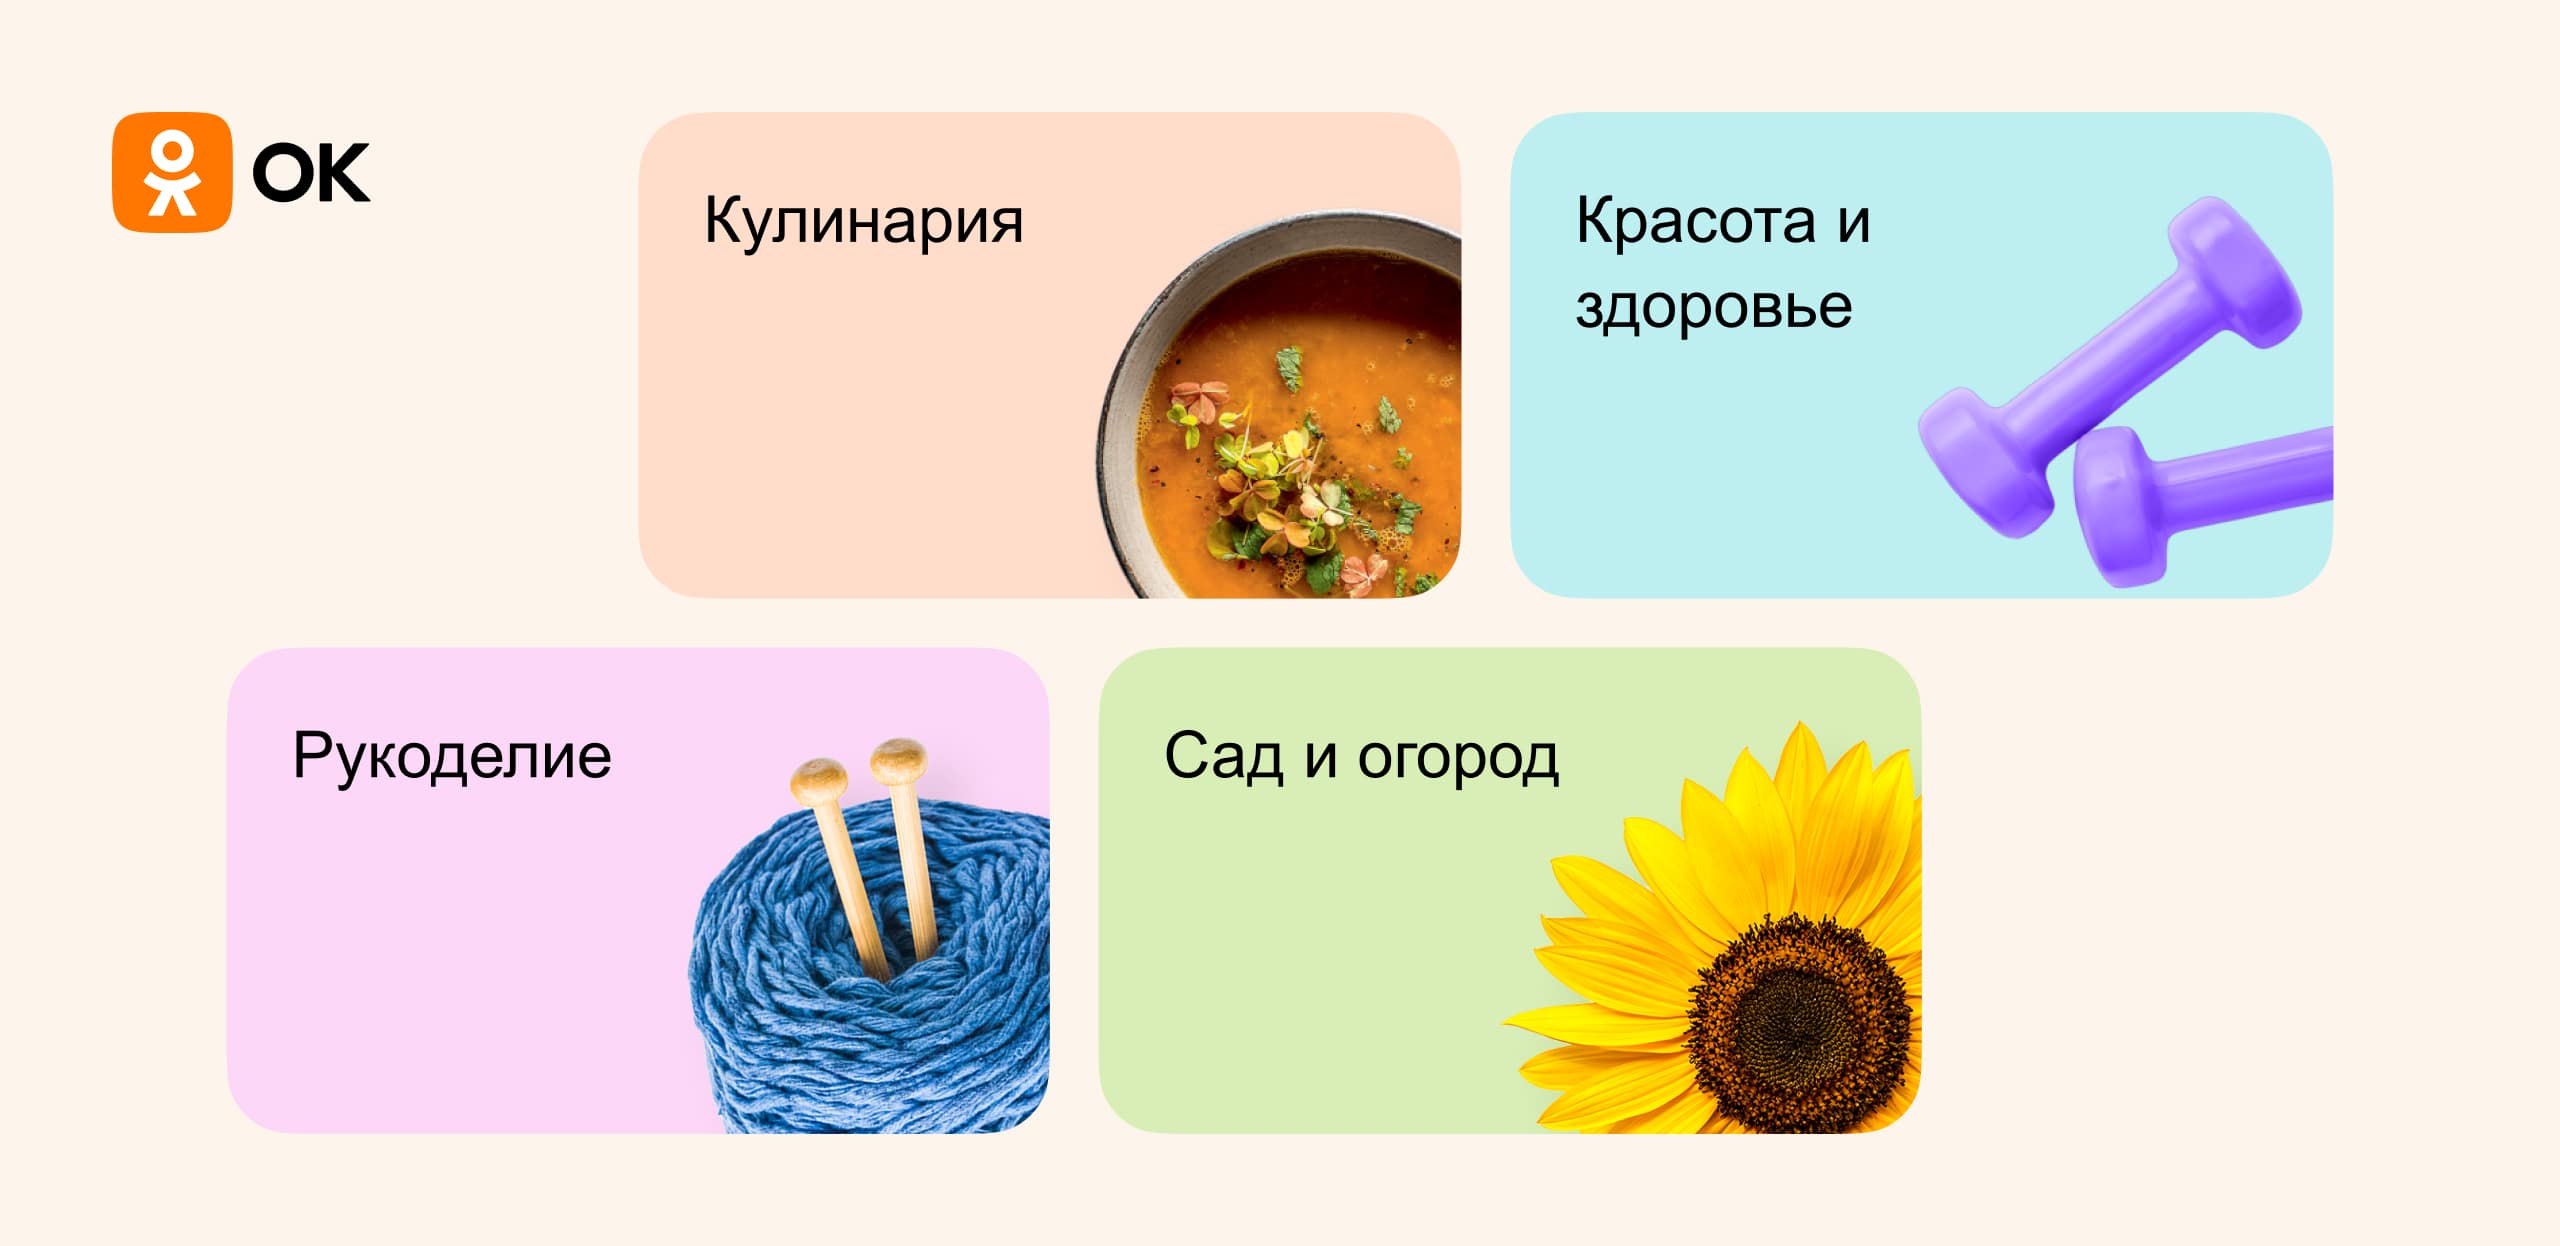 Одноклассники обновили «Увлечения»: общение по интересам, вопросы профессионалам и экспертные материалы